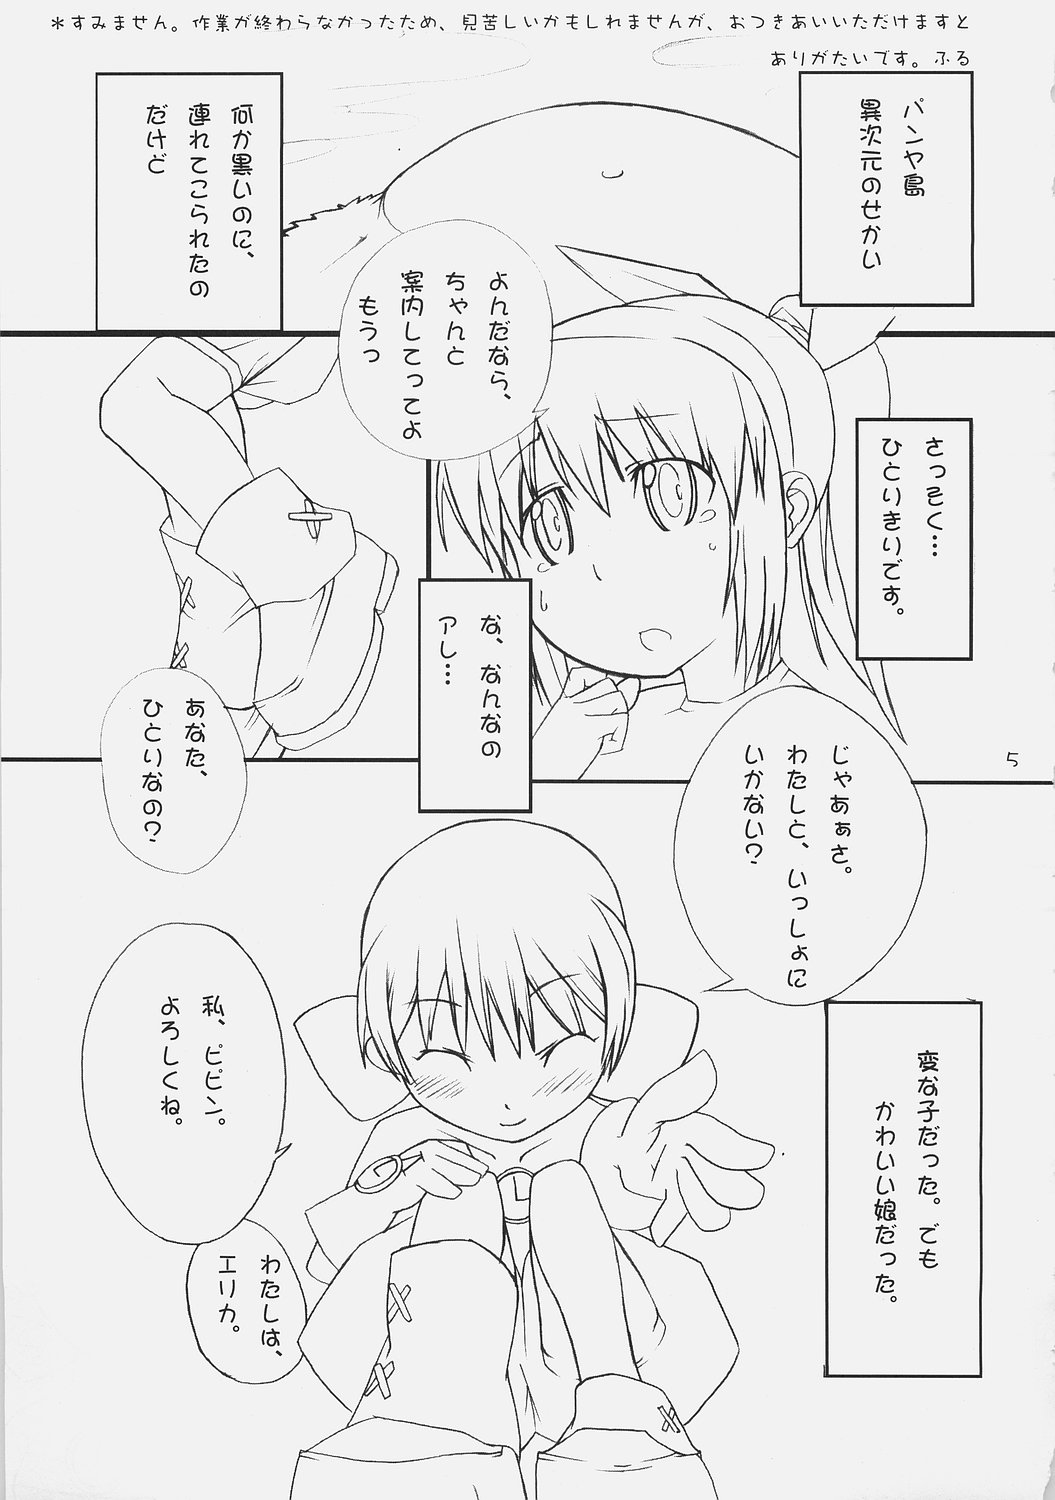 (ComiComi9) [Umi No Sachi Teishoku, Chimaroni?, Fake fur, (Kakifly, Chimaro, Furu)] PanPanPangya (Sukatto Golf Pangya) page 4 full